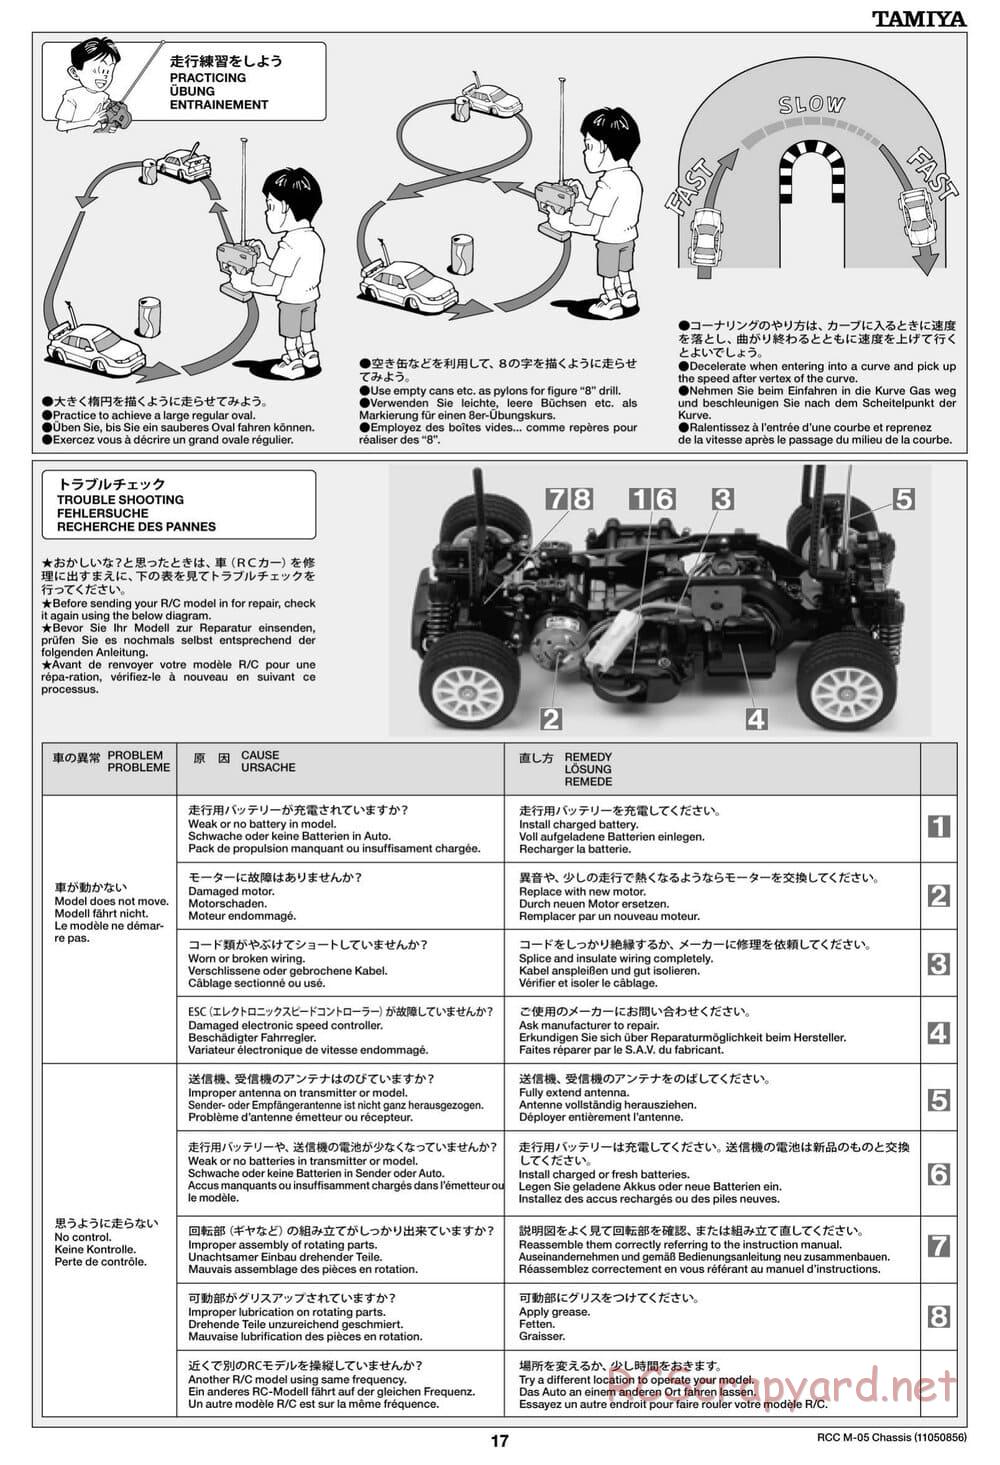 Tamiya - M-05 Chassis - Manual - Page 17